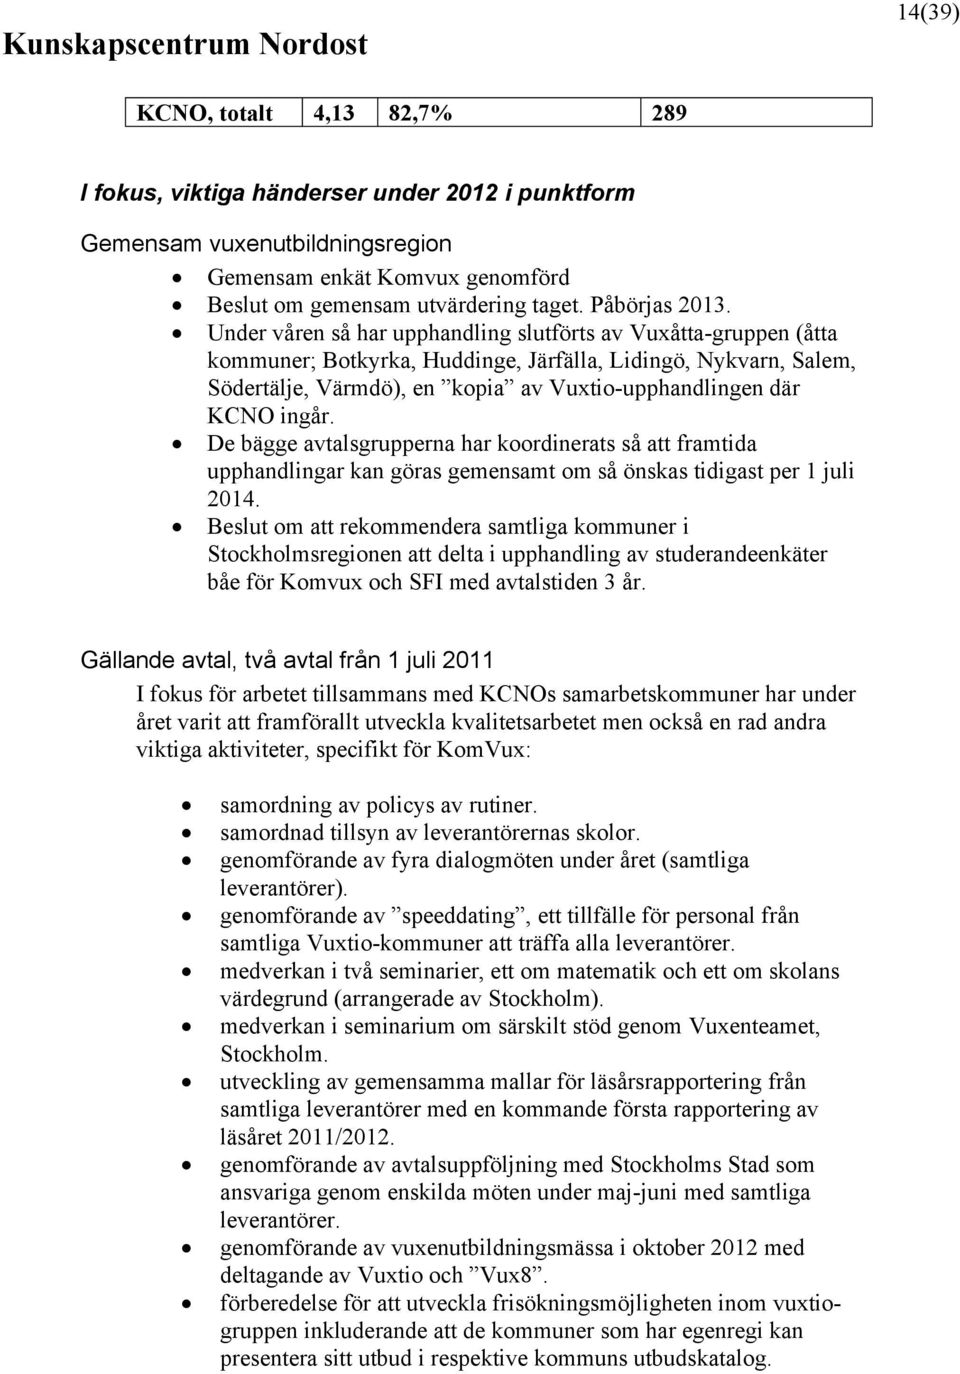 Under våren så har upphandling slutförts av Vuxåtta-gruppen (åtta kommuner; Botkyrka, Huddinge, Järfälla, Lidingö, Nykvarn, Salem, Södertälje, Värmdö), en kopia av Vuxtio-upphandlingen där KCNO ingår.